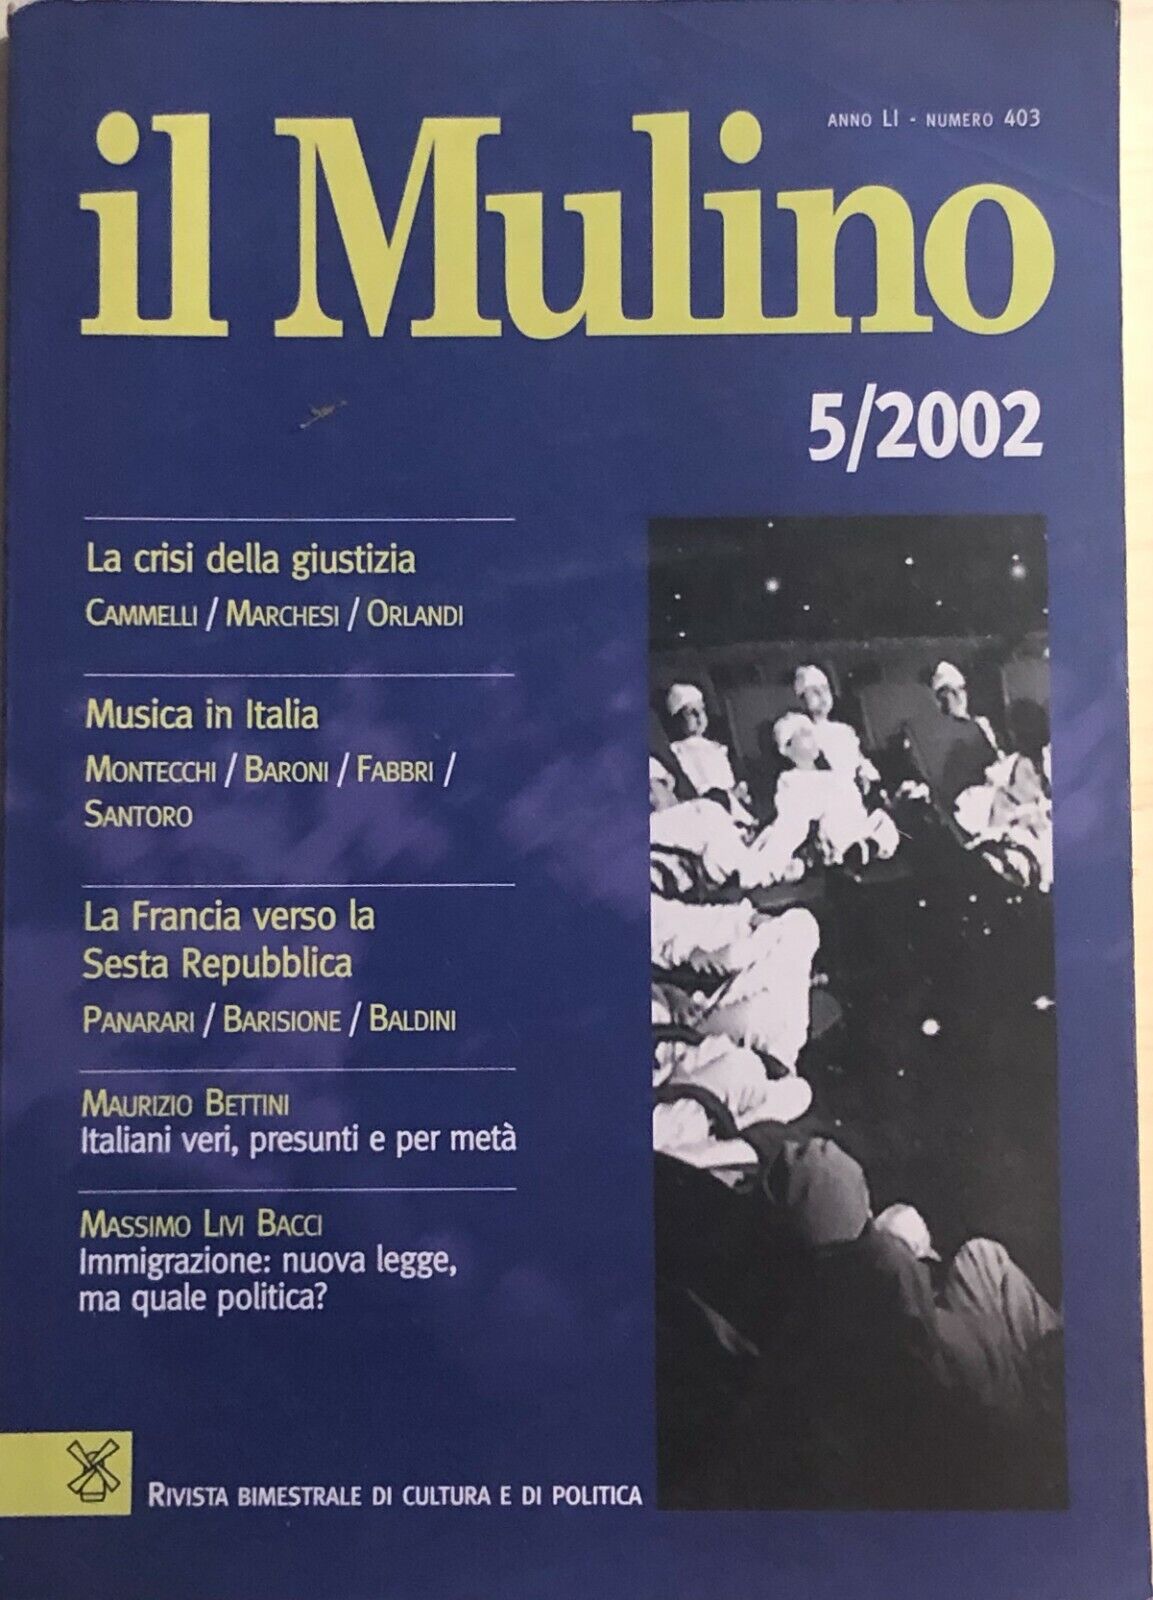 Il Mulino 5/2002, Anno LI - Nr.403 di Aa.vv., 2002, Il Mulino